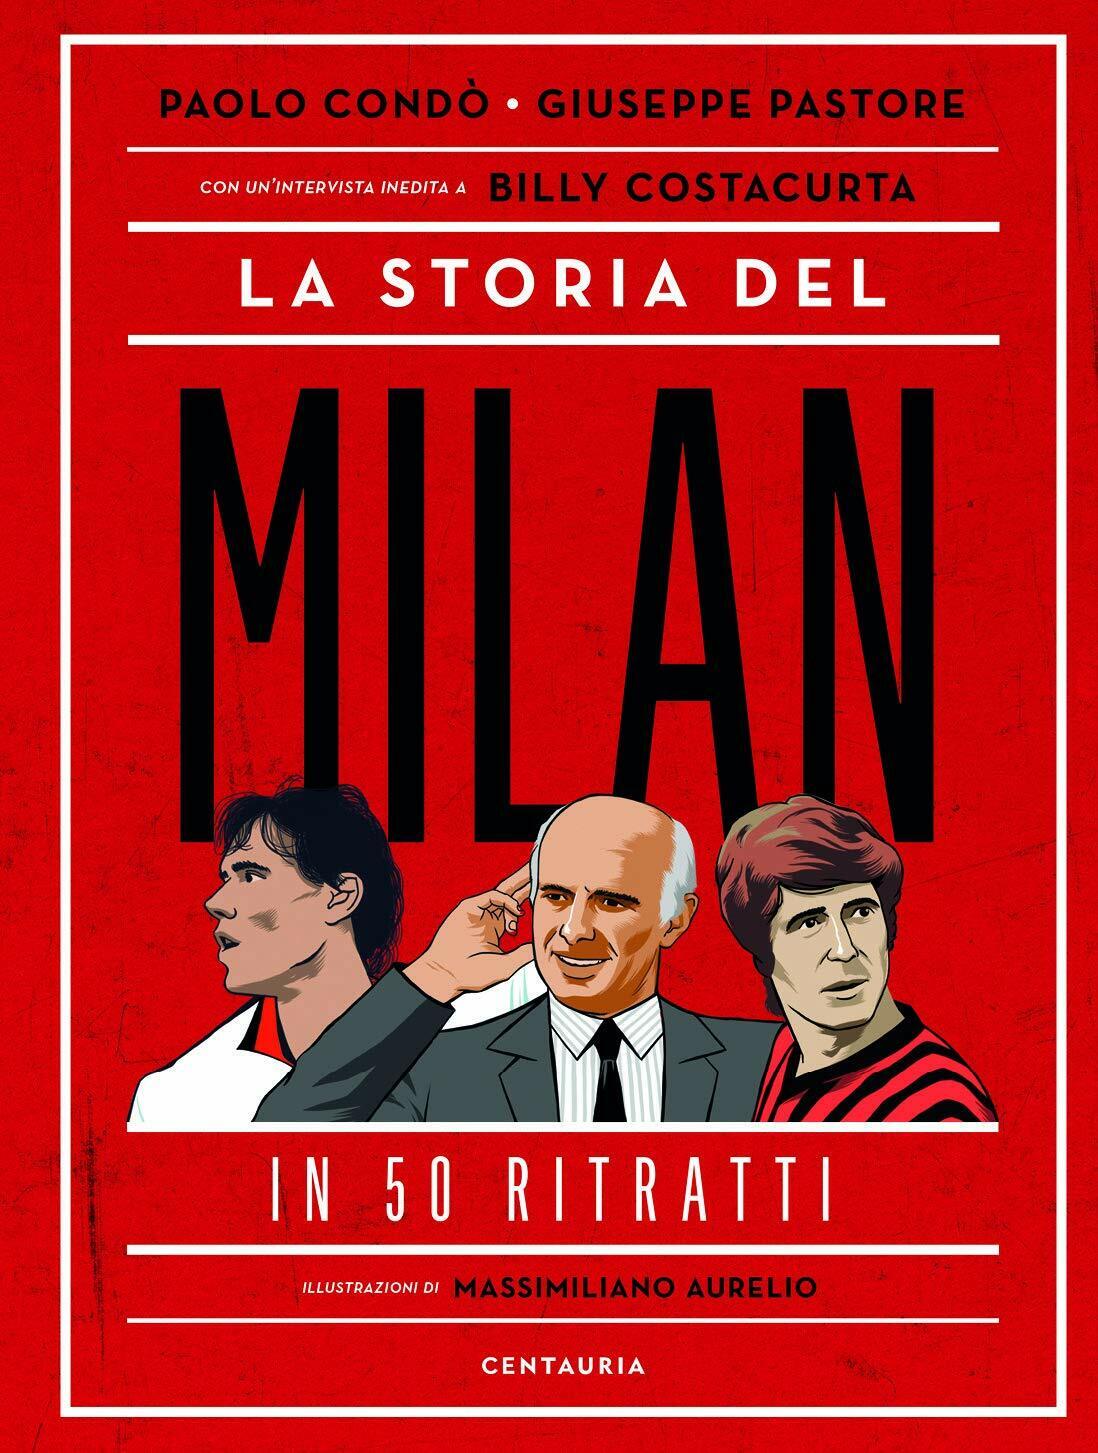 La storia del Milan in 50 ritratti - Paolo Cond?, Giuseppe Pastore - 2020